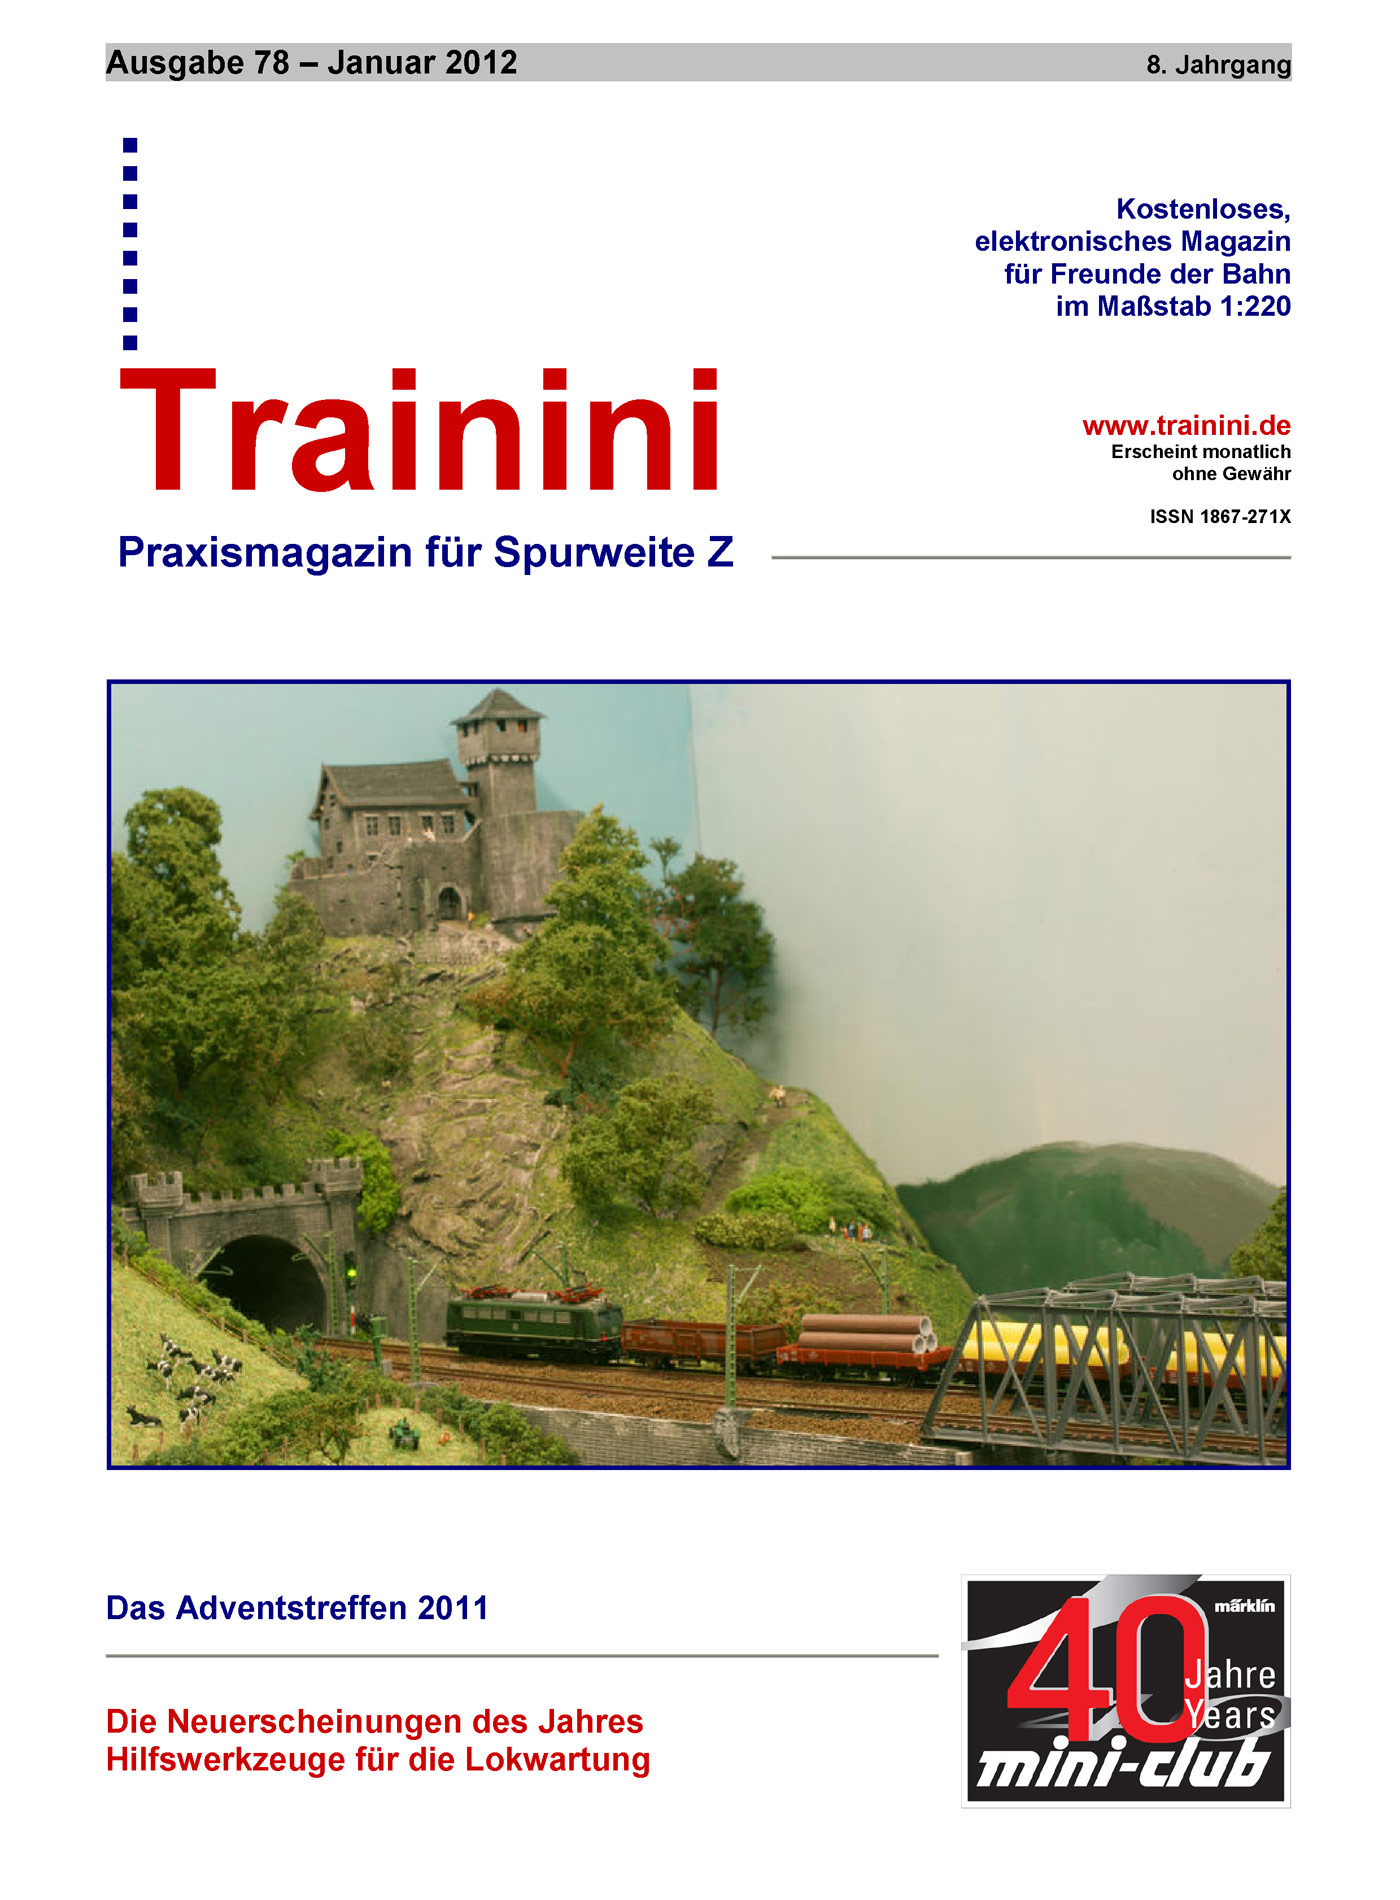 Trainini Ausgabe Januar 2012